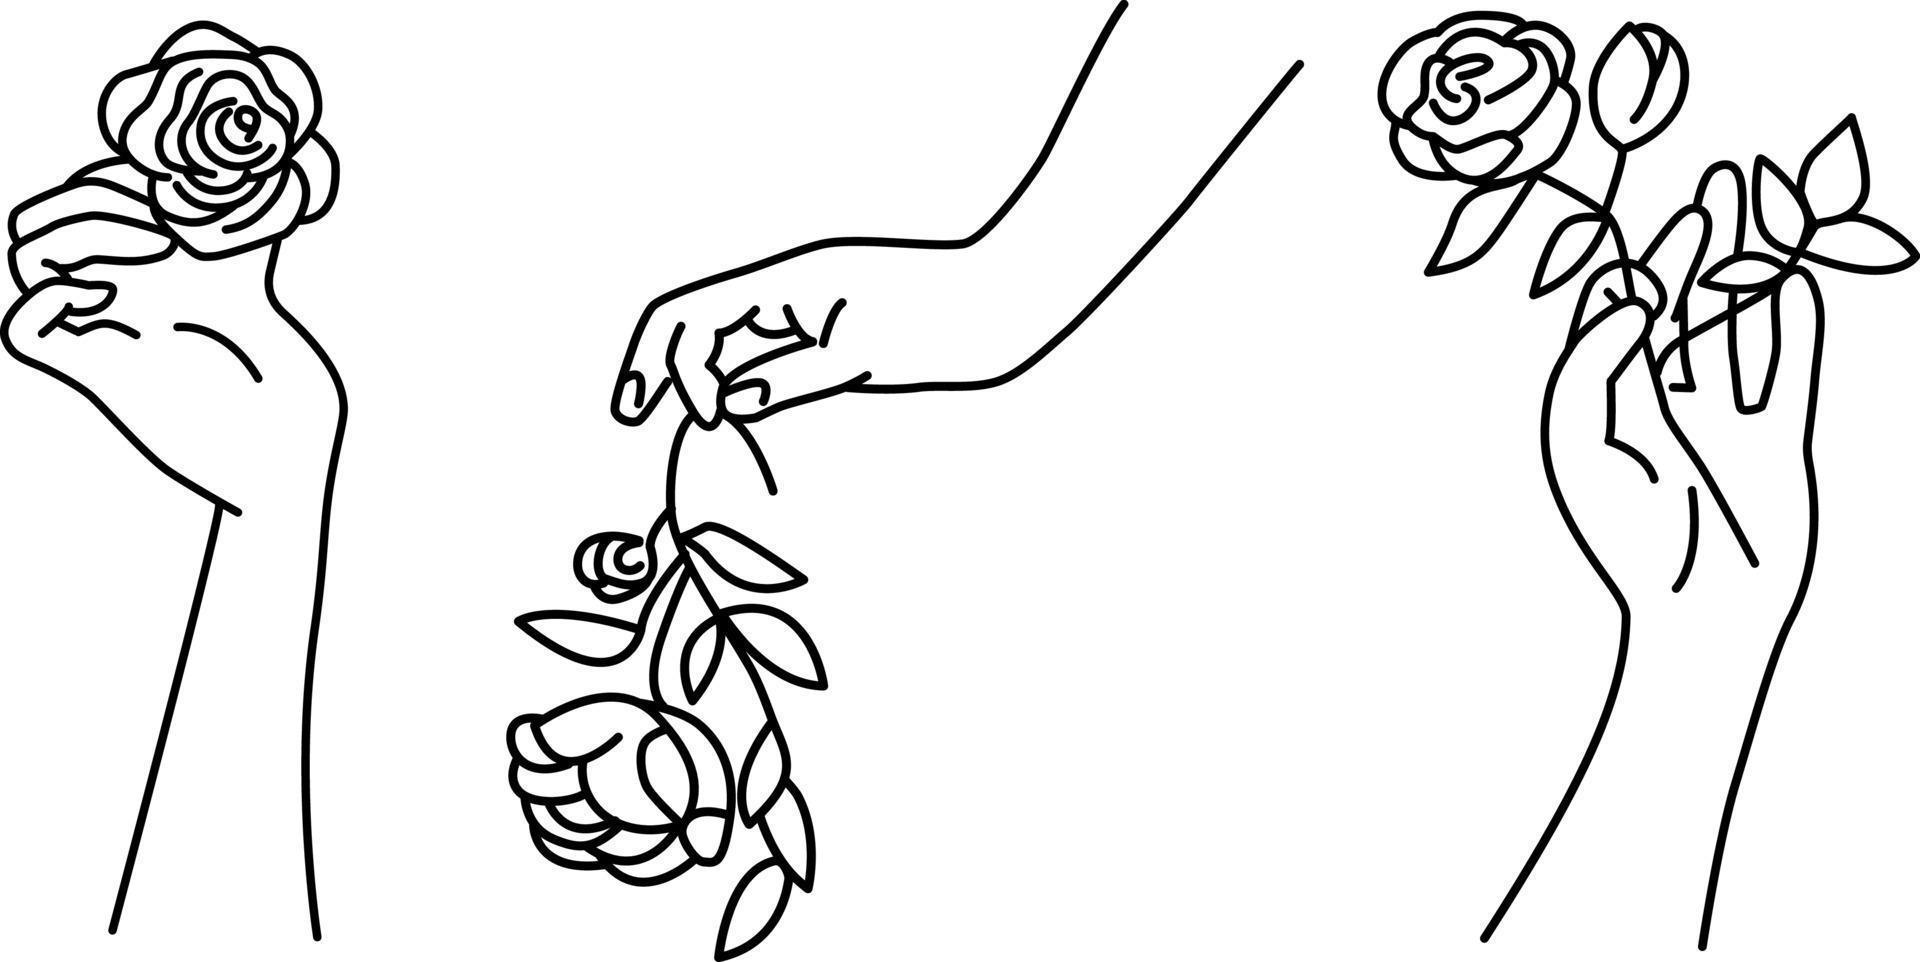 un jeu de mains avec des roses dans un style linéaire simple. palmiers femelles tenant des fleurs. illustration vectorielle symbolique et décorative. vecteur